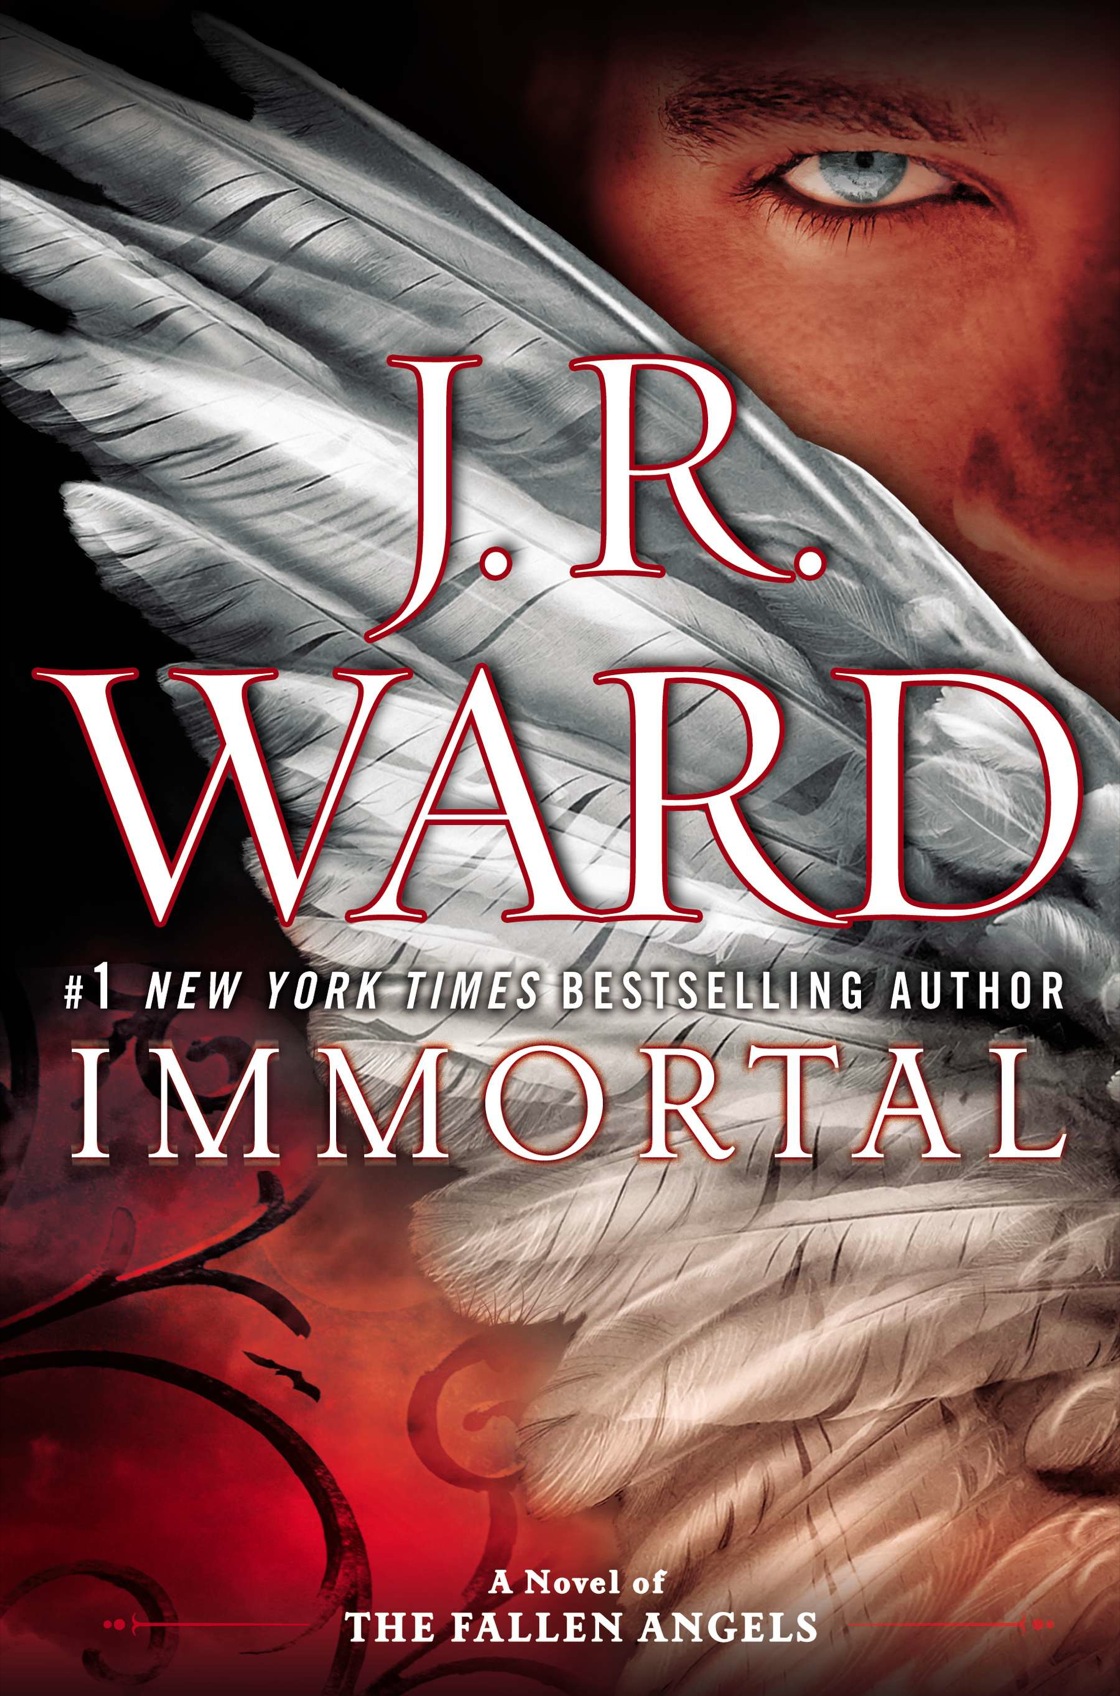 Immortal (2014) by J.R. Ward